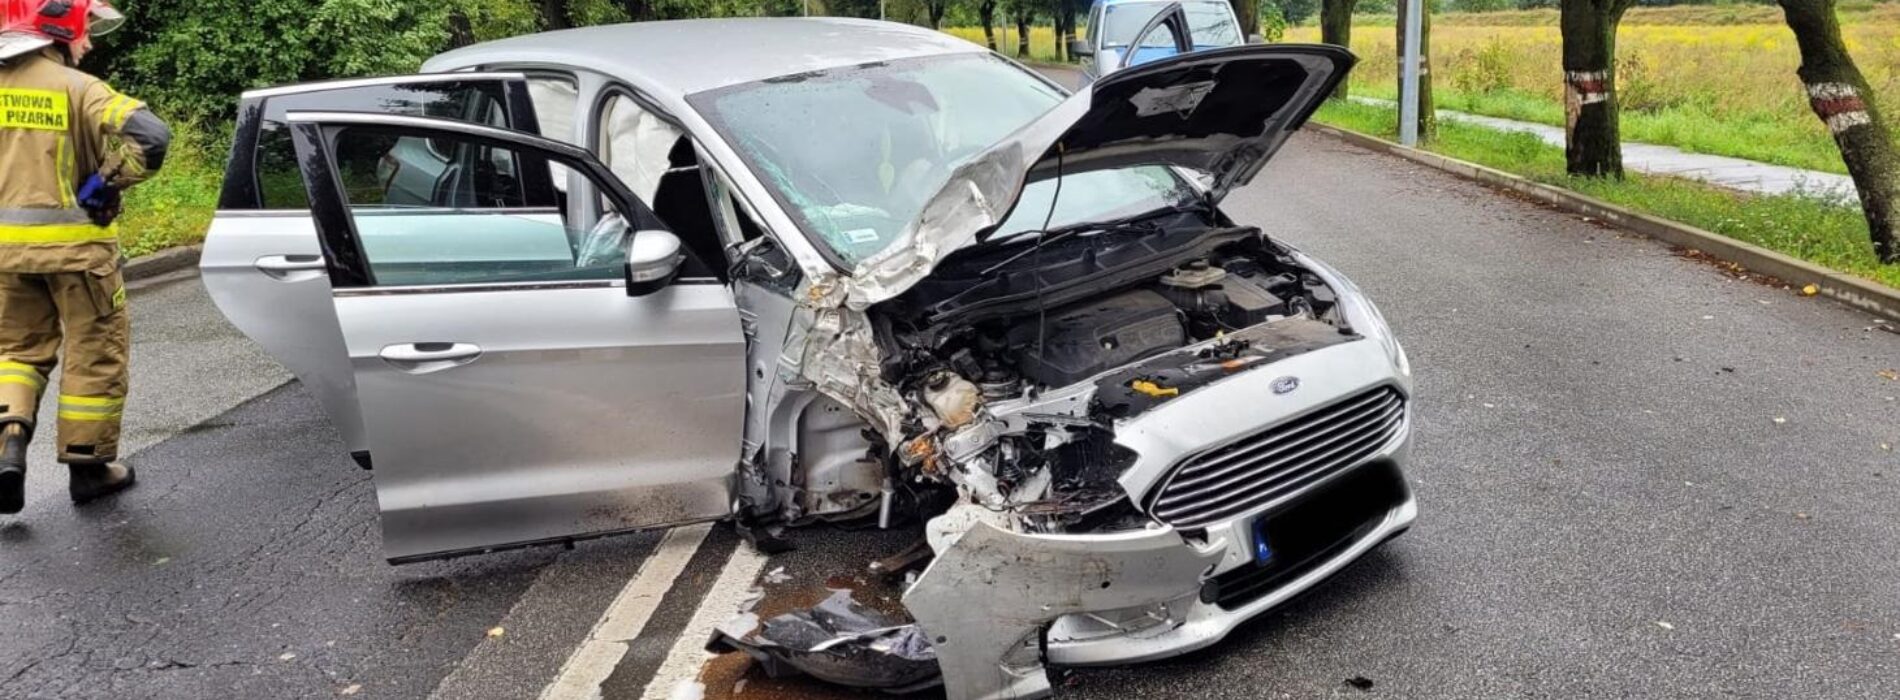 Wypadek pojazdu osobowego na ulicy Nowodworskiej w Legnicy